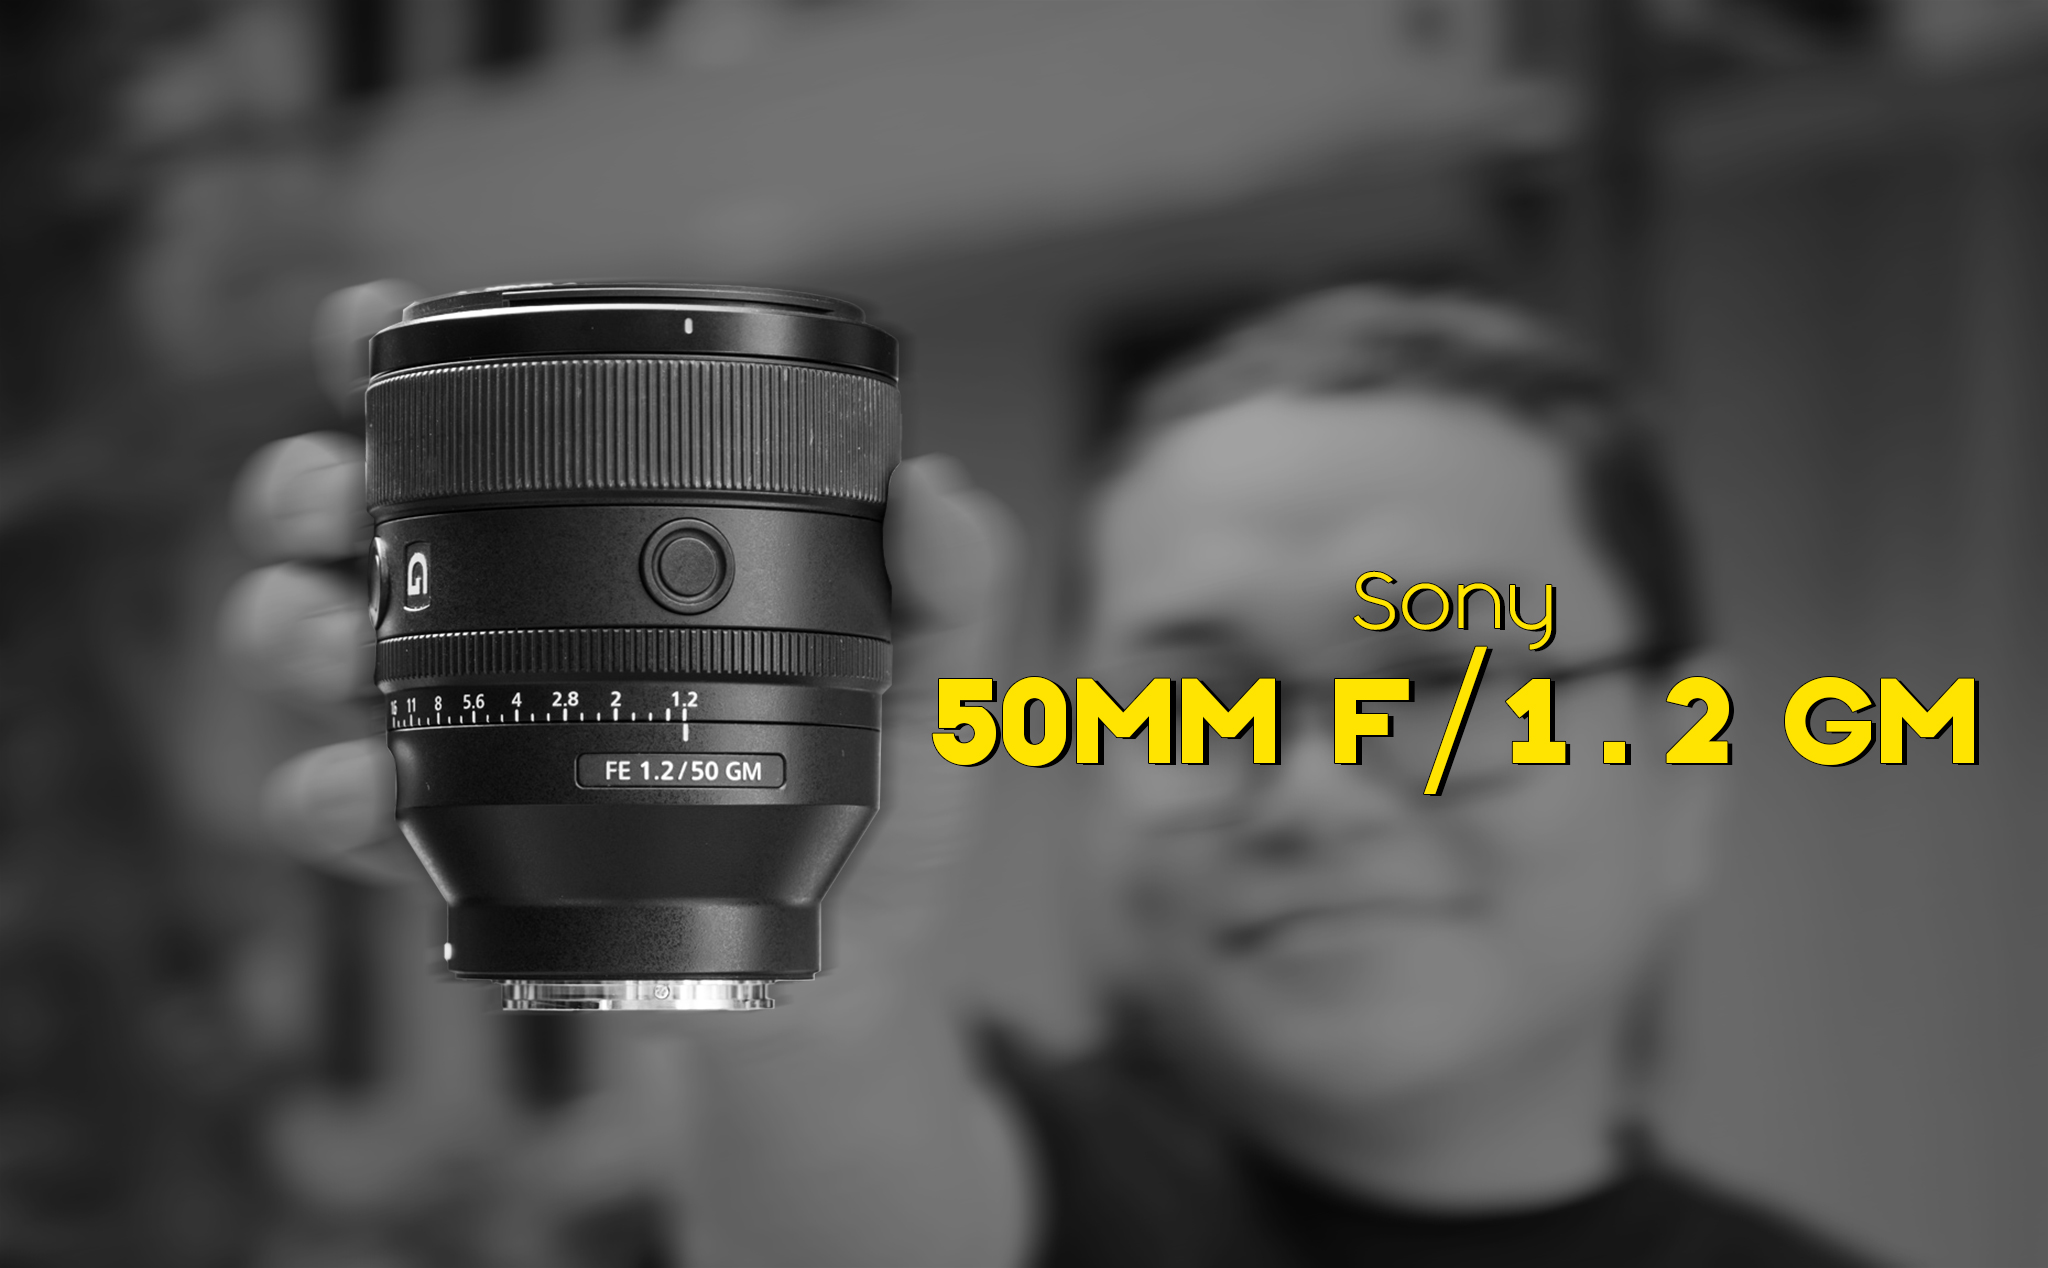 Test chất lượng hình ảnh của ống kính Sony FE 50mm f/1.2 GM